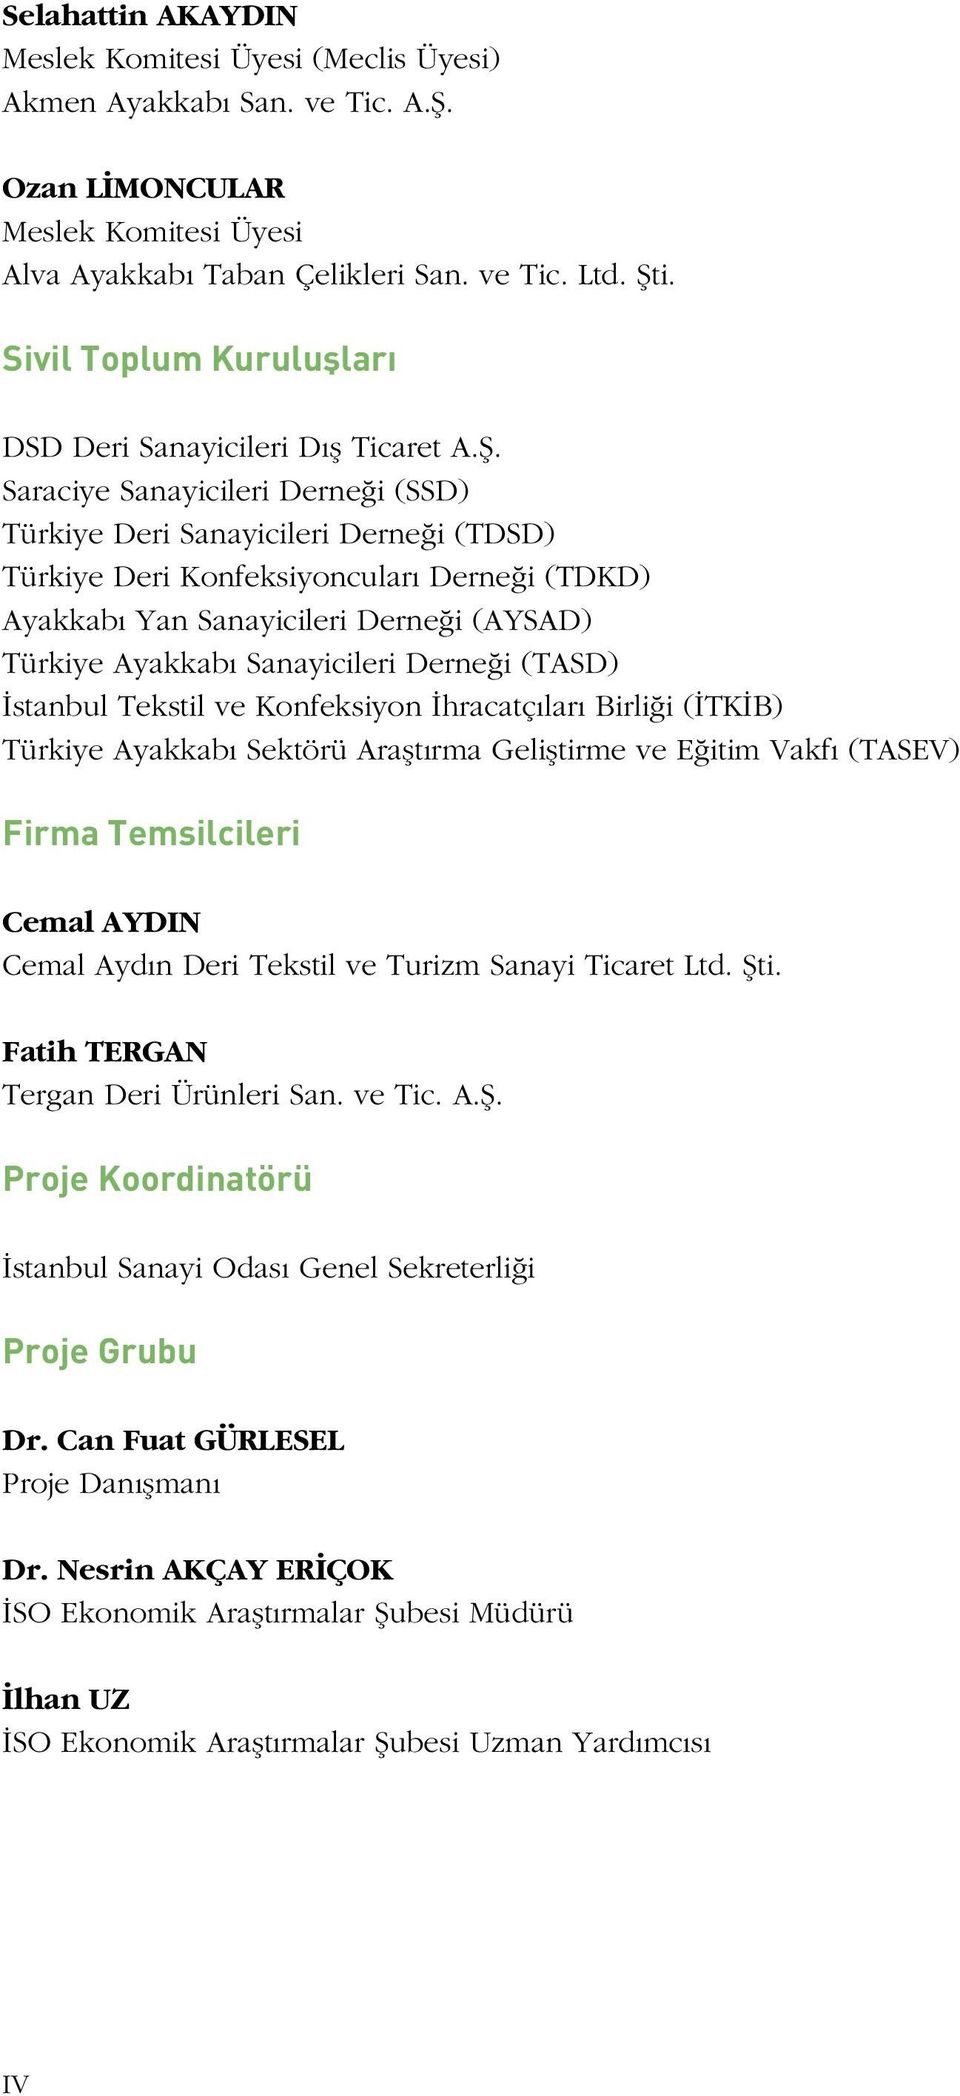 Saraciye Sanayicileri Derneği (SSD) Türkiye Deri Sanayicileri Derneği (TDSD) Türkiye Deri Konfeksiyoncuları Derneği (TDKD) Ayakkabı Yan Sanayicileri Derneği (AYSAD) Türkiye Ayakkabı Sanayicileri